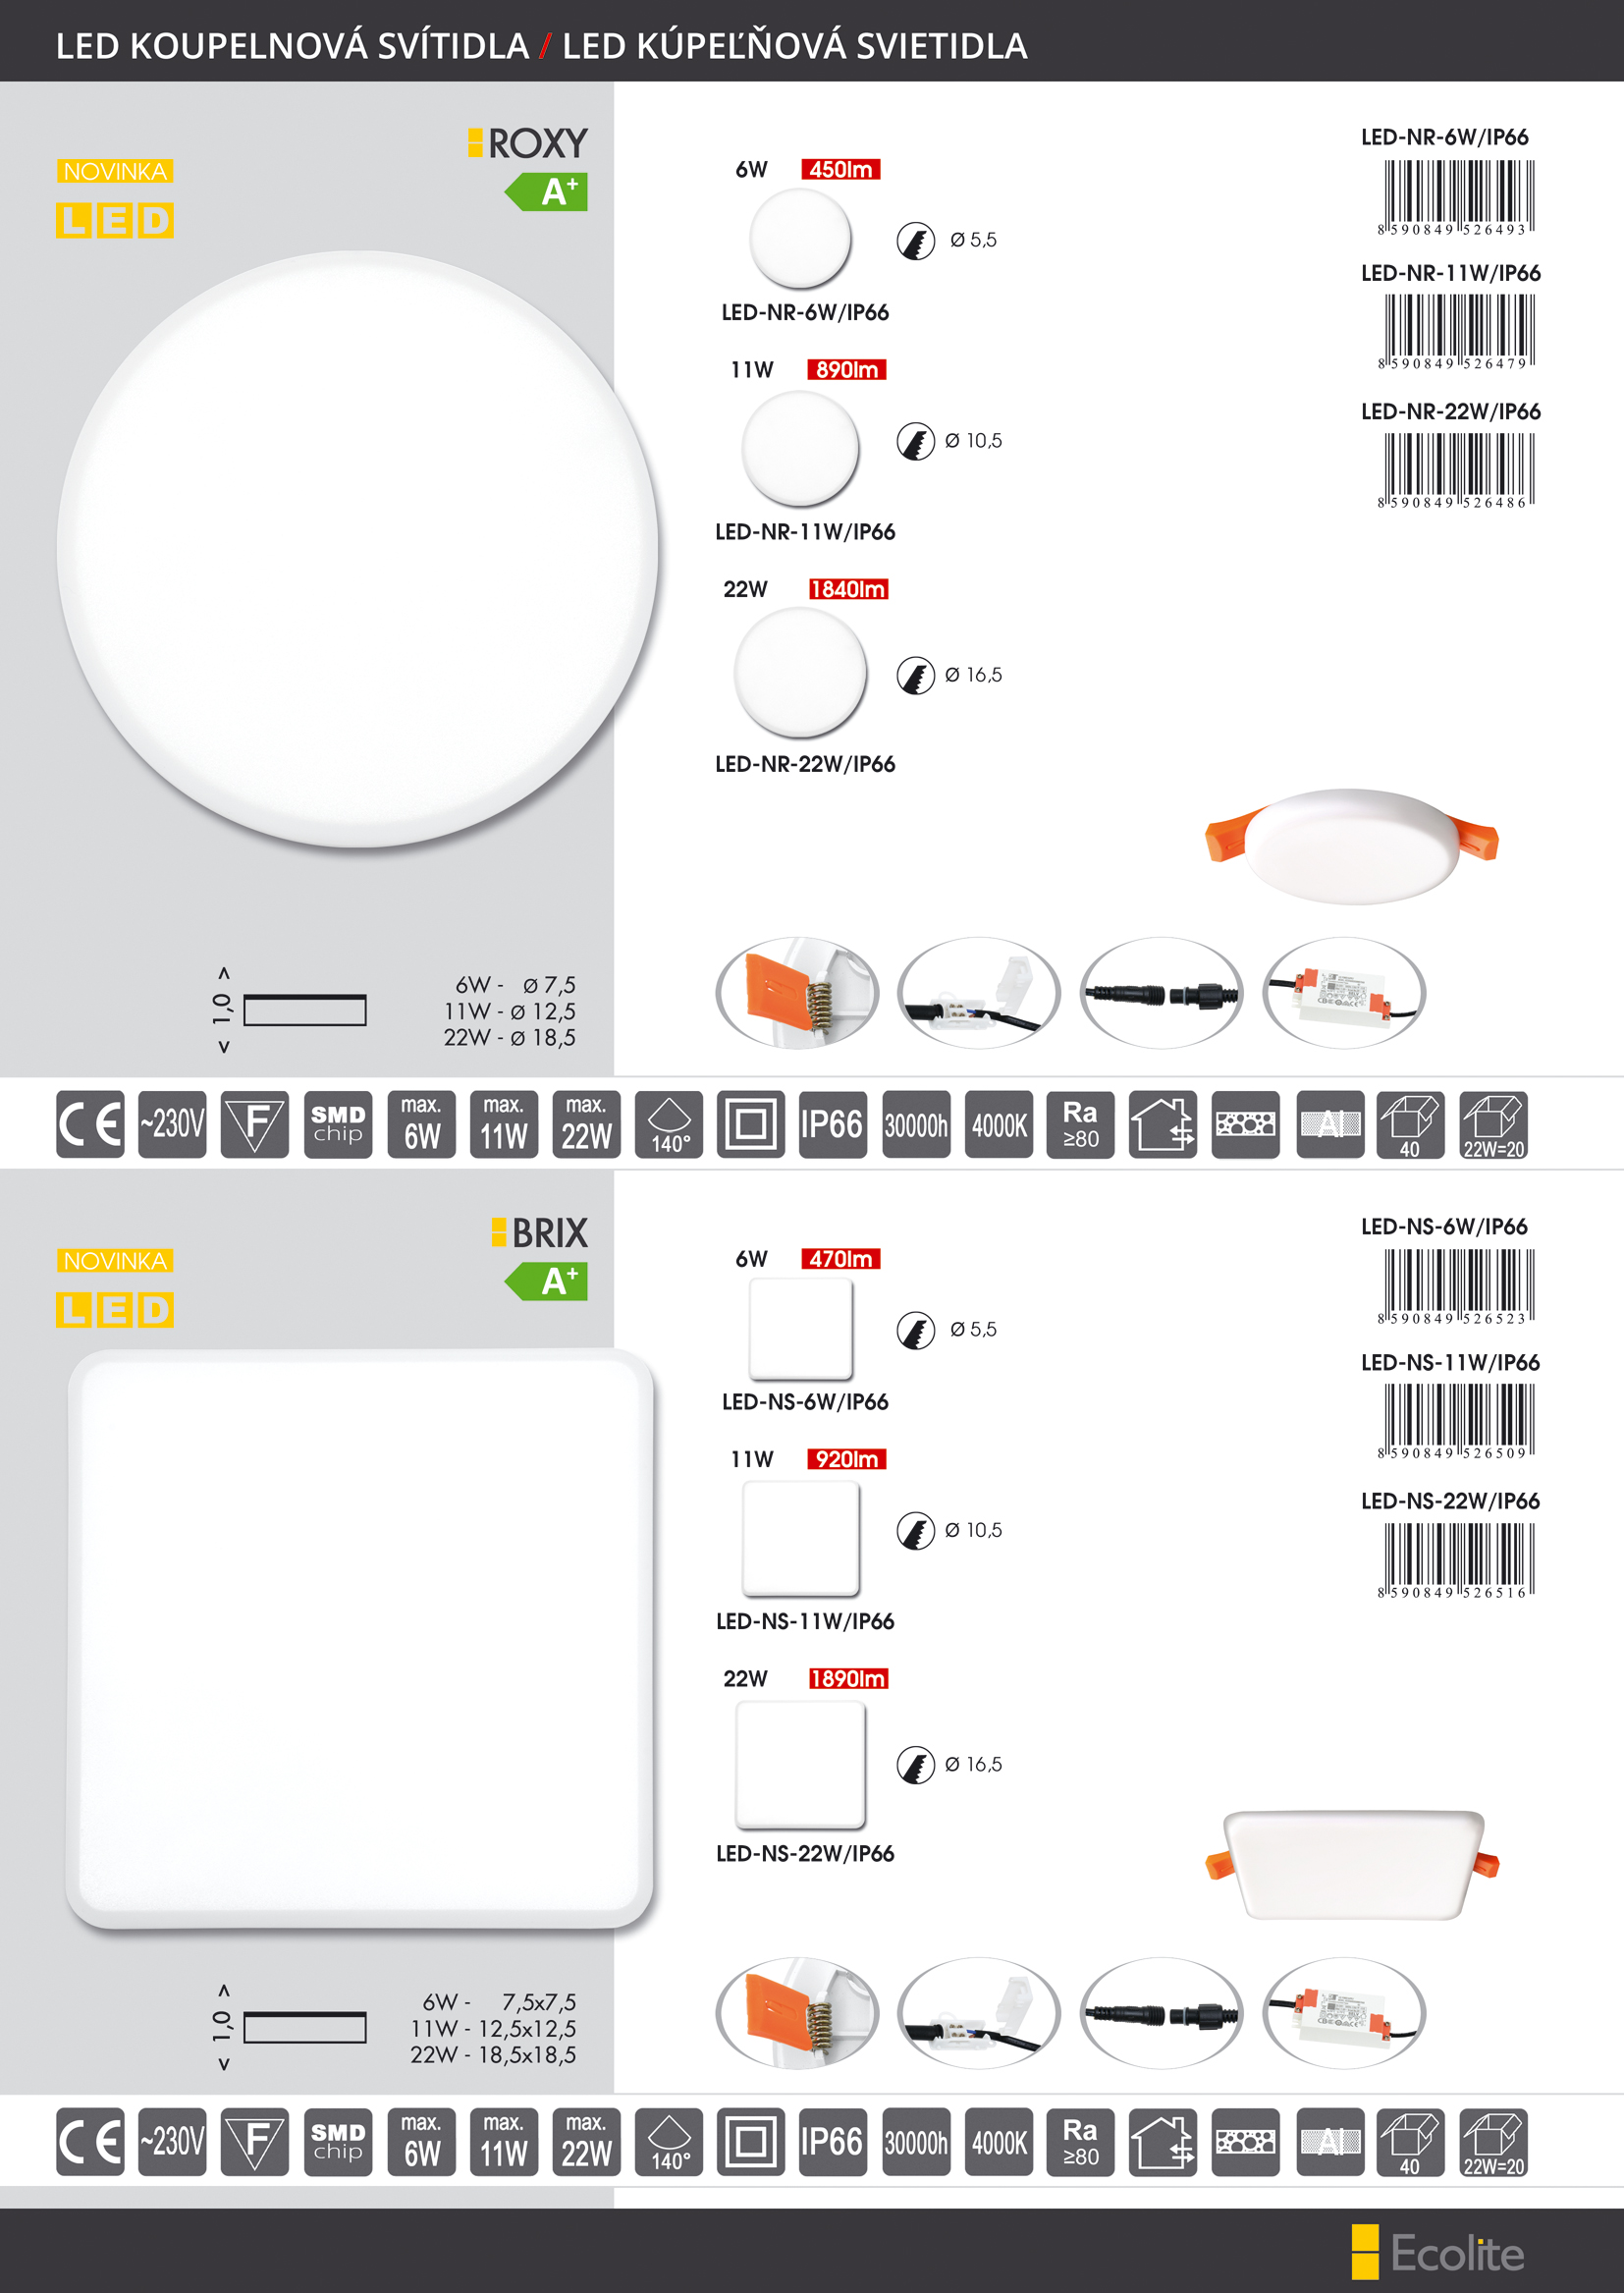 LED svítidlo koupelnové Roxy Ecolite 6W, IP66, LED-NR-6W/IP66, panel kruh, 4000K - zvìtšit obrázek